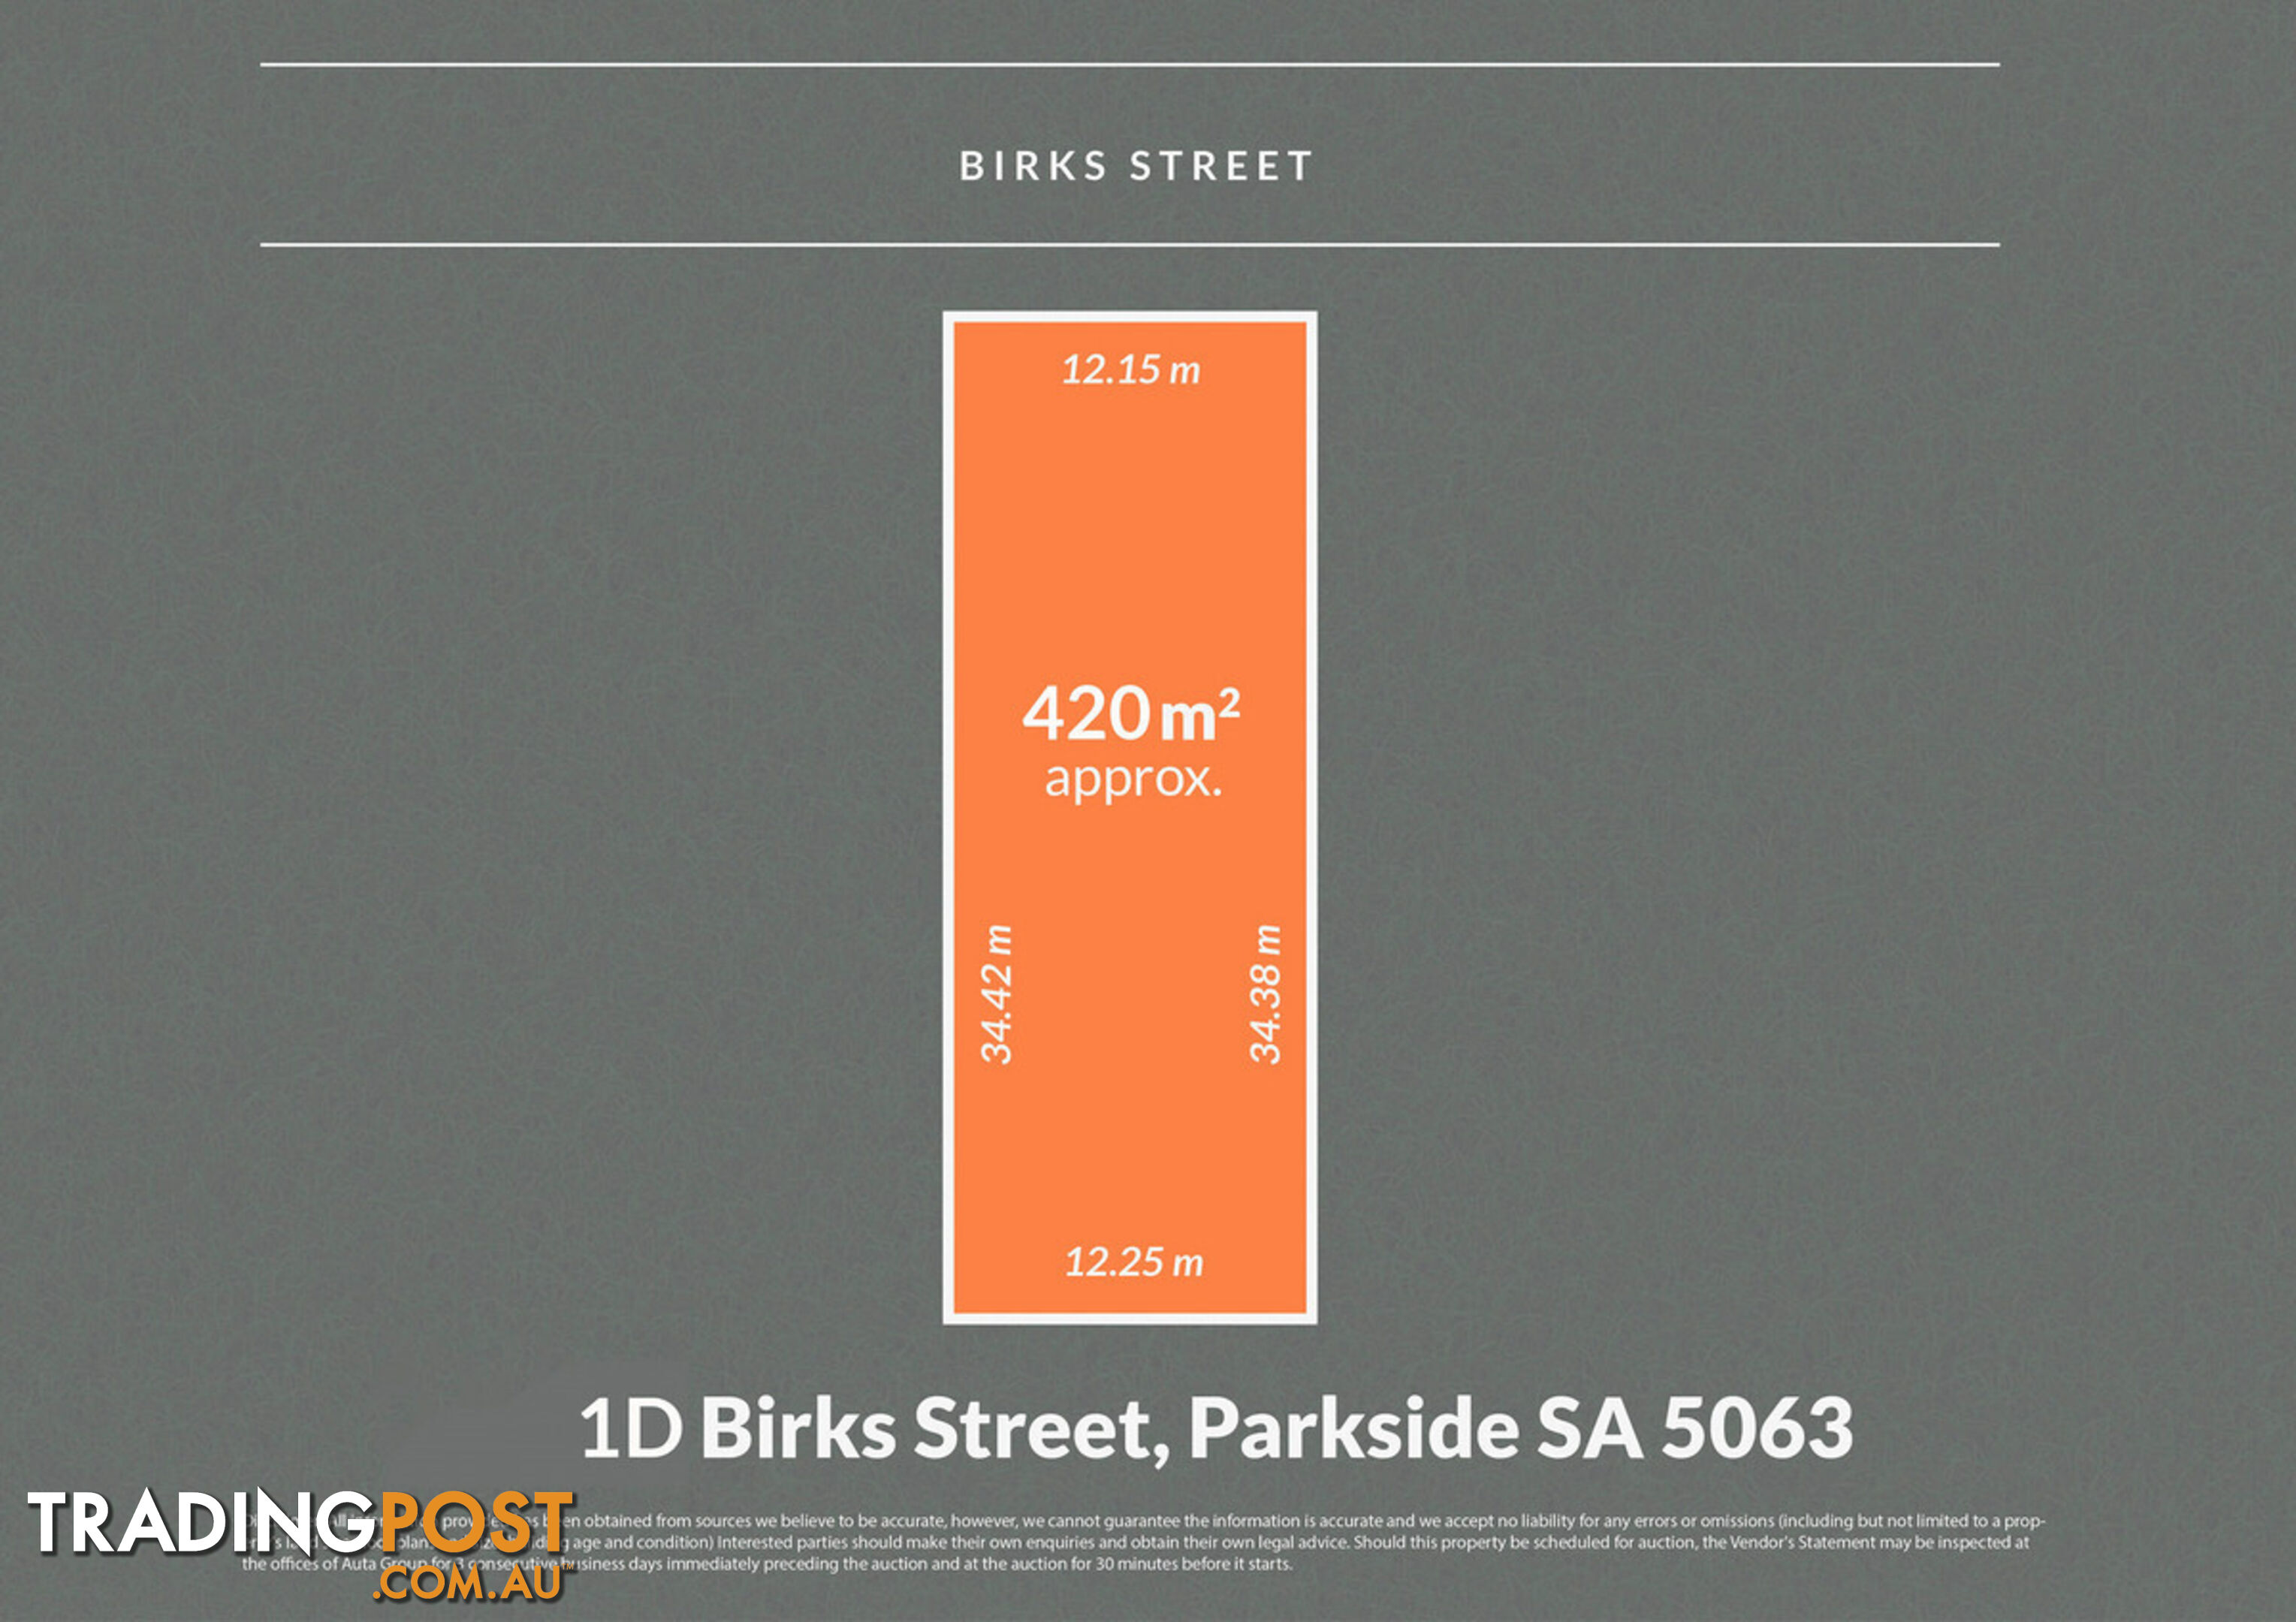 1D Birks Street PARKSIDE SA 5063